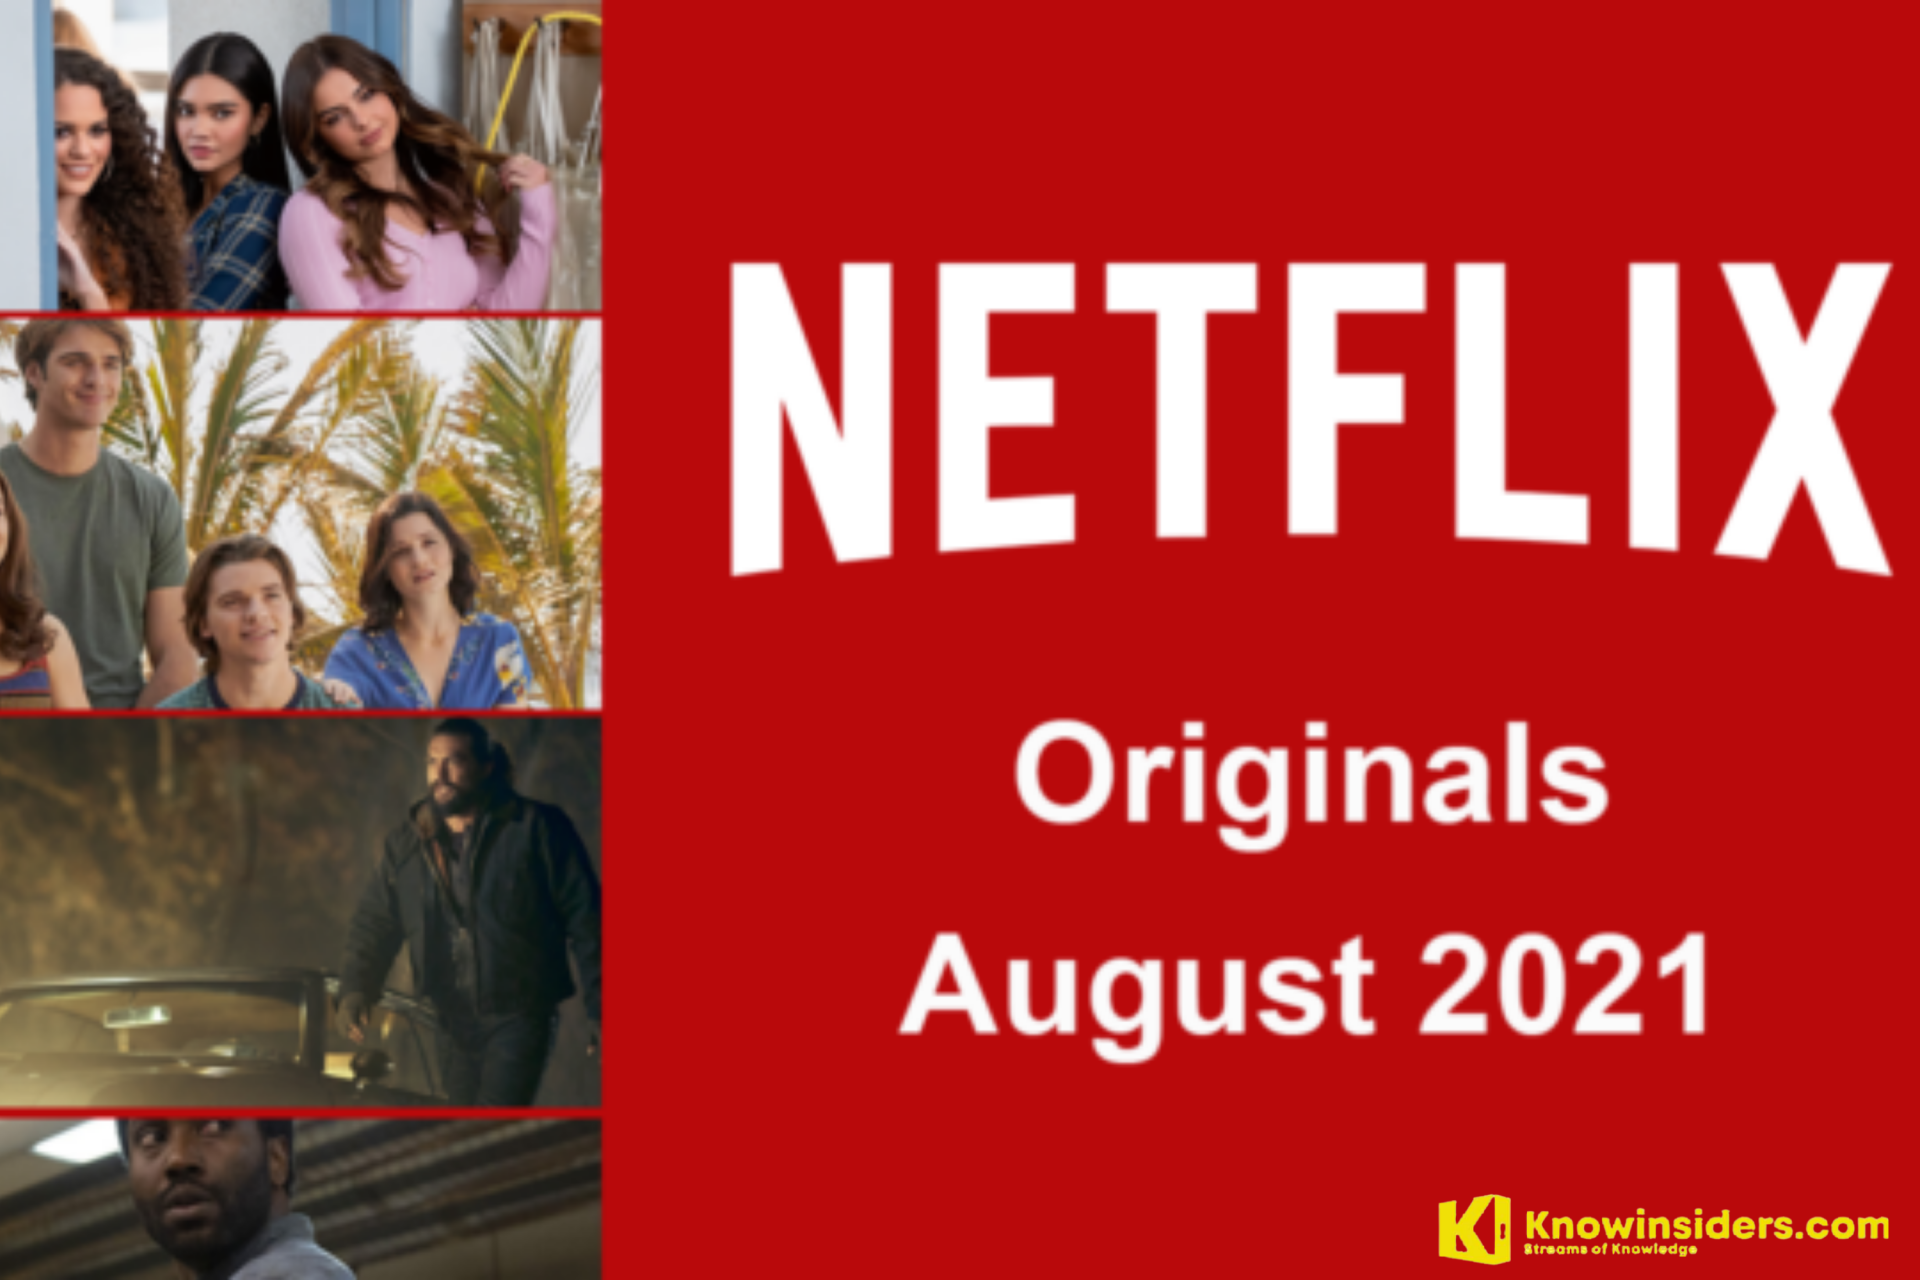 Netflix Originals Coming to Netflix in August 2021